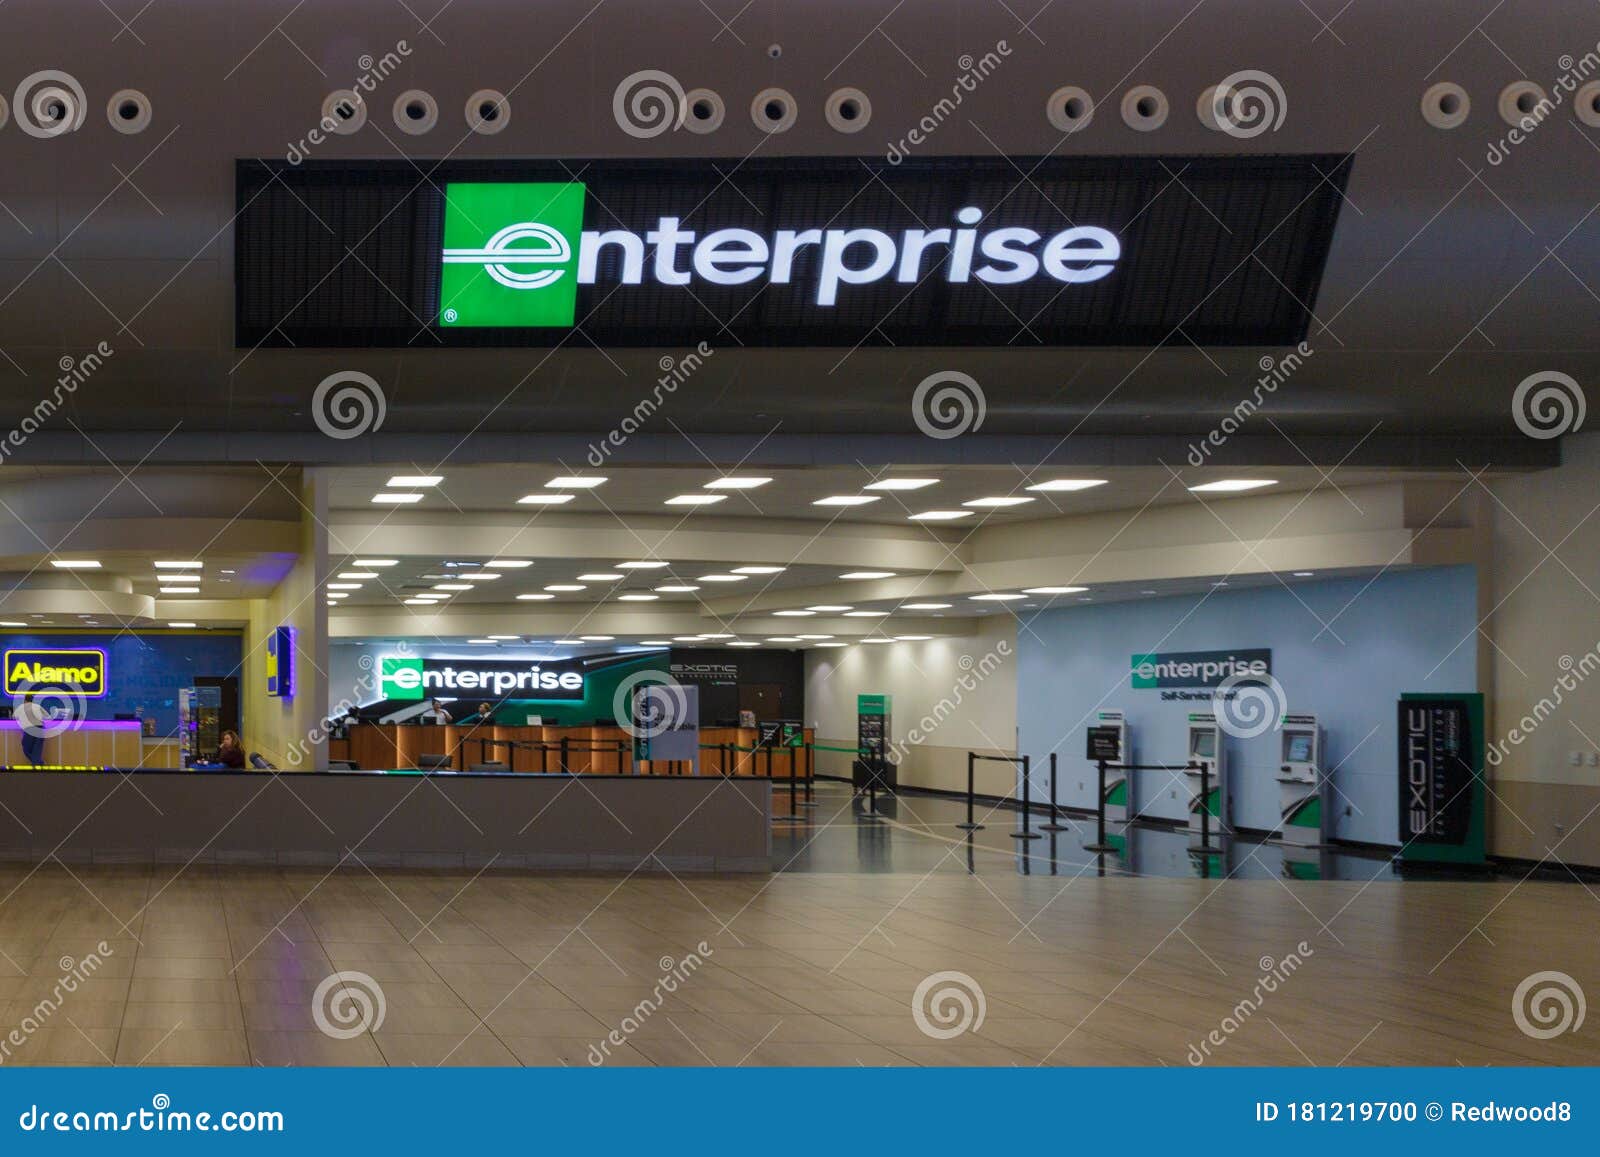 Enterprise Airport Rental Car Area In Kansas City Airport Editorial